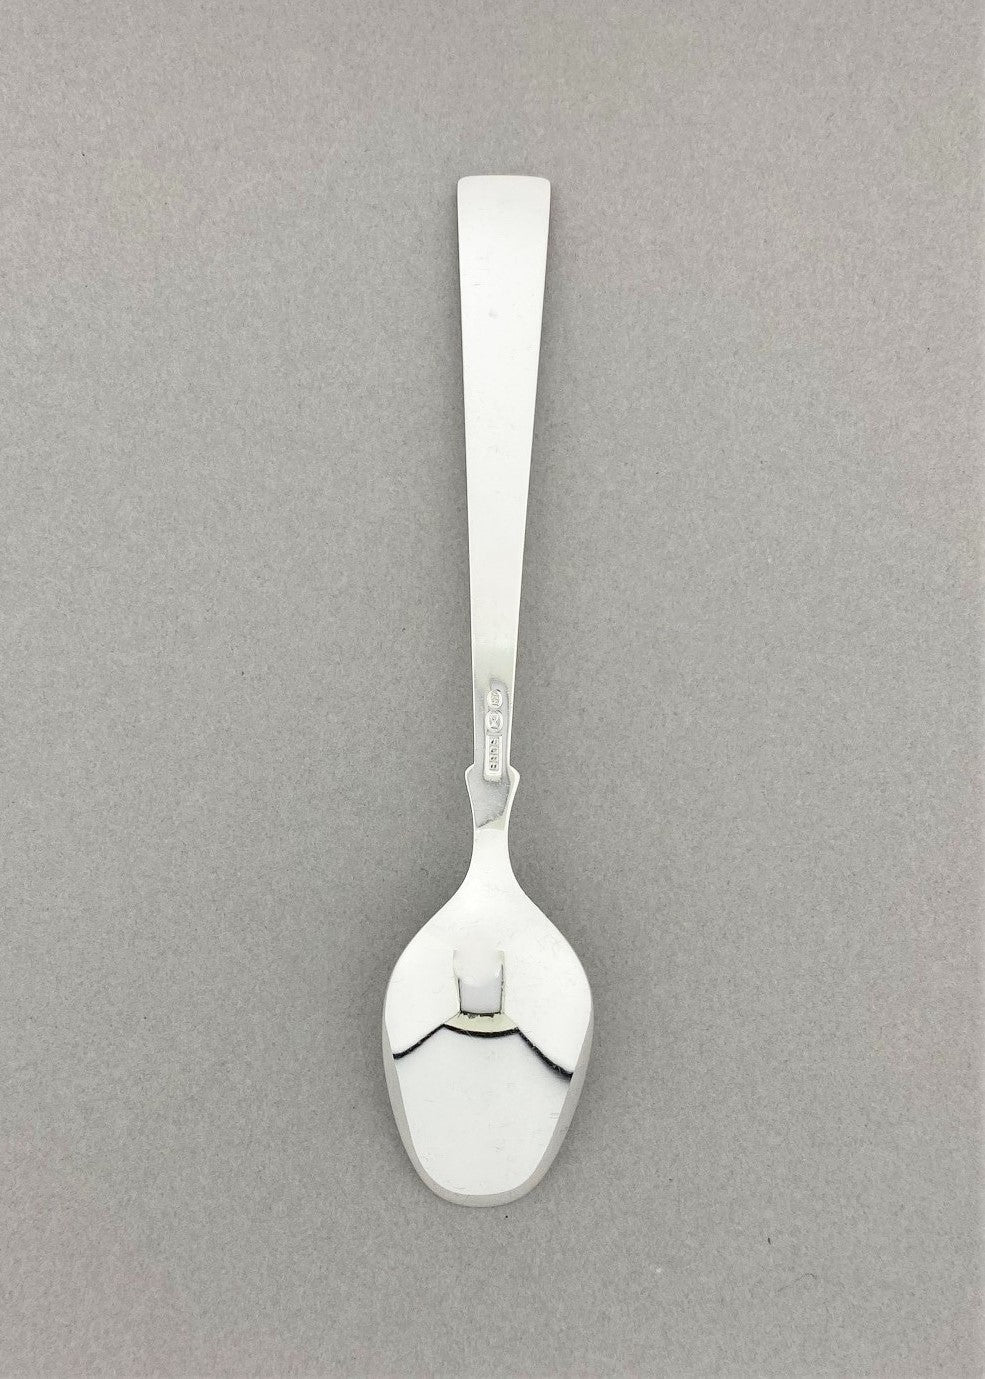 Vintage Heirloom silver teaspoon